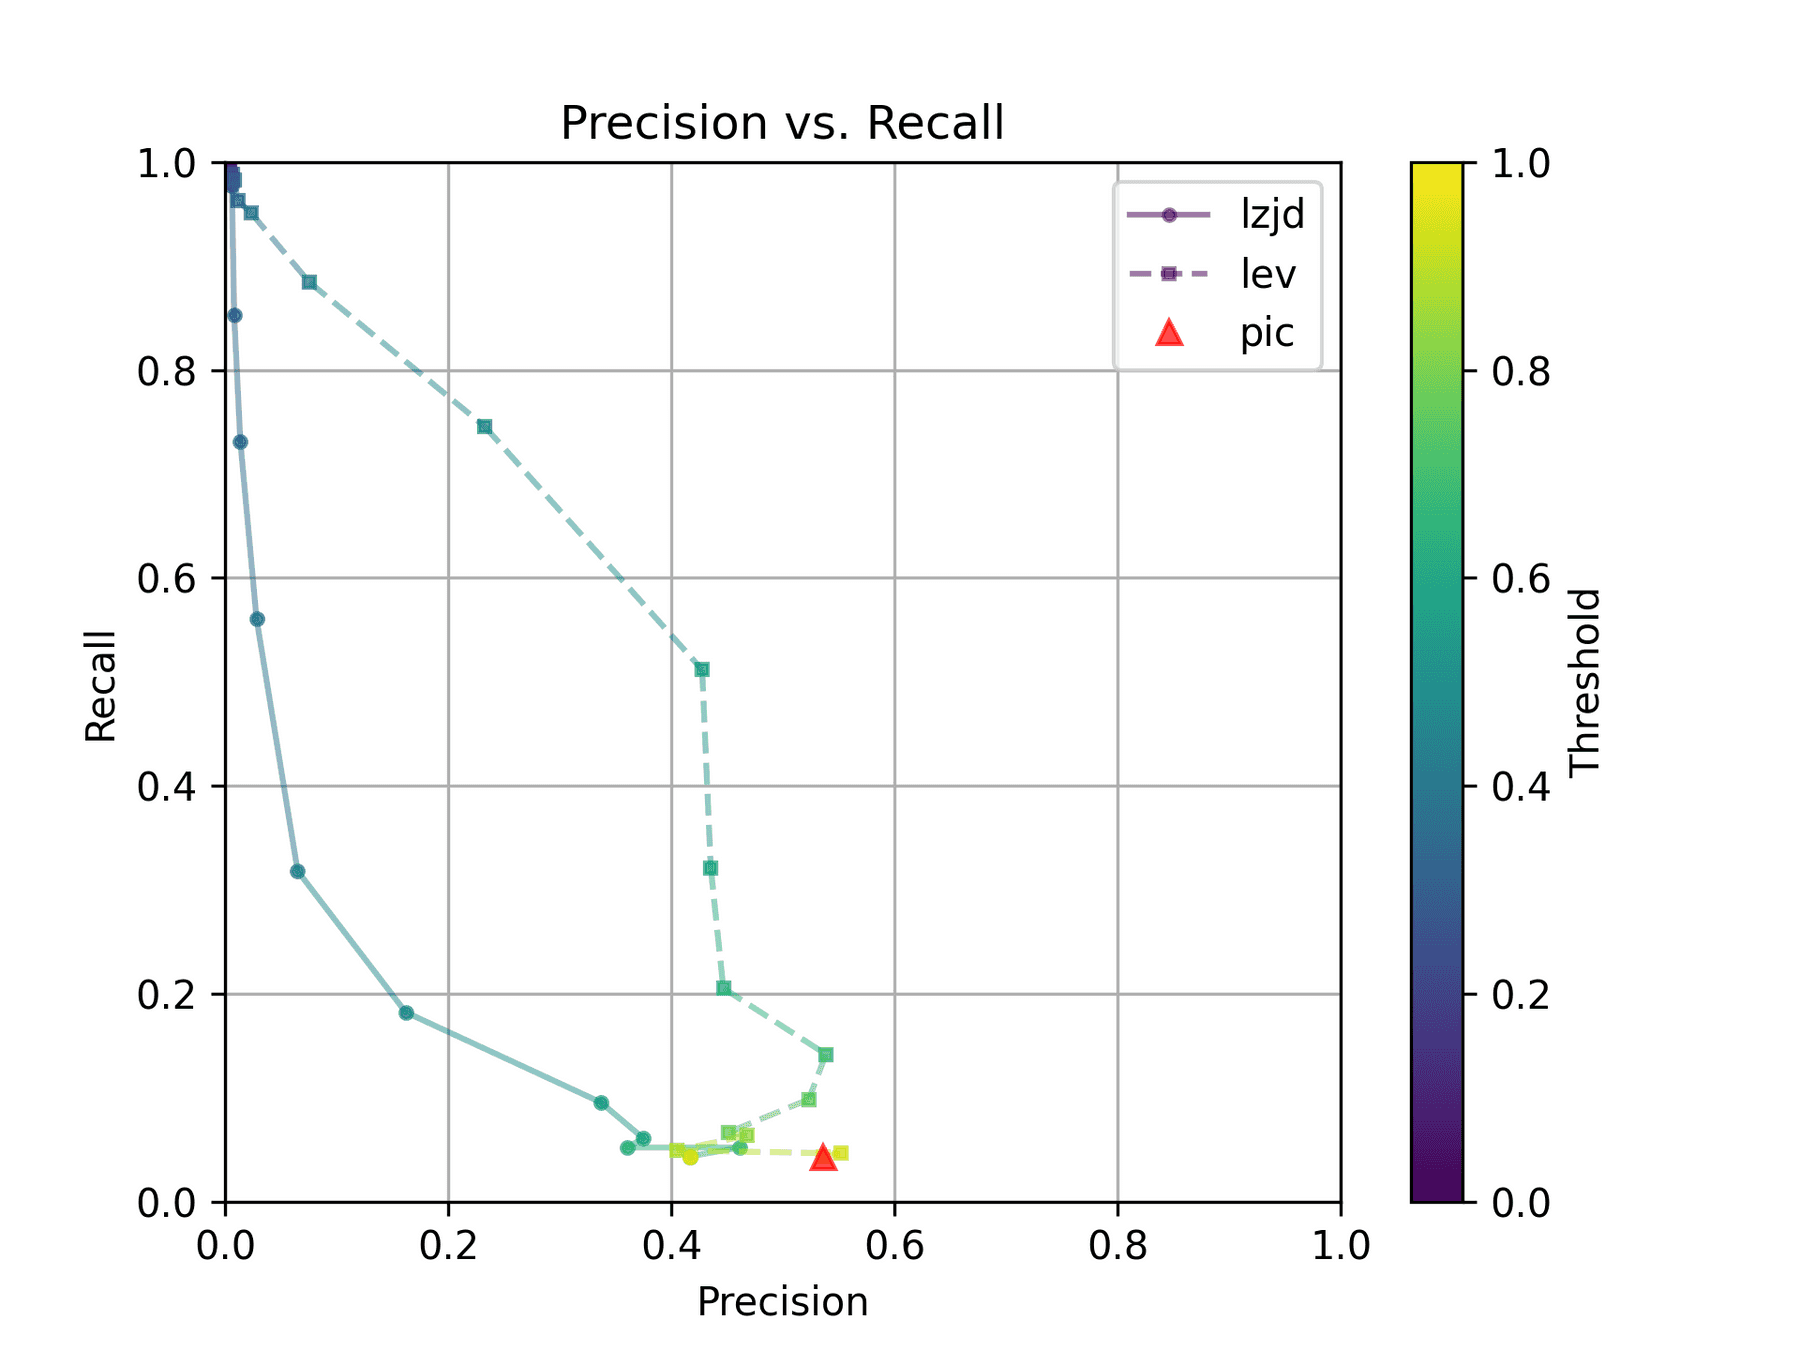 Precision vs. Recall plot for "openssl -O1 vs -O2"